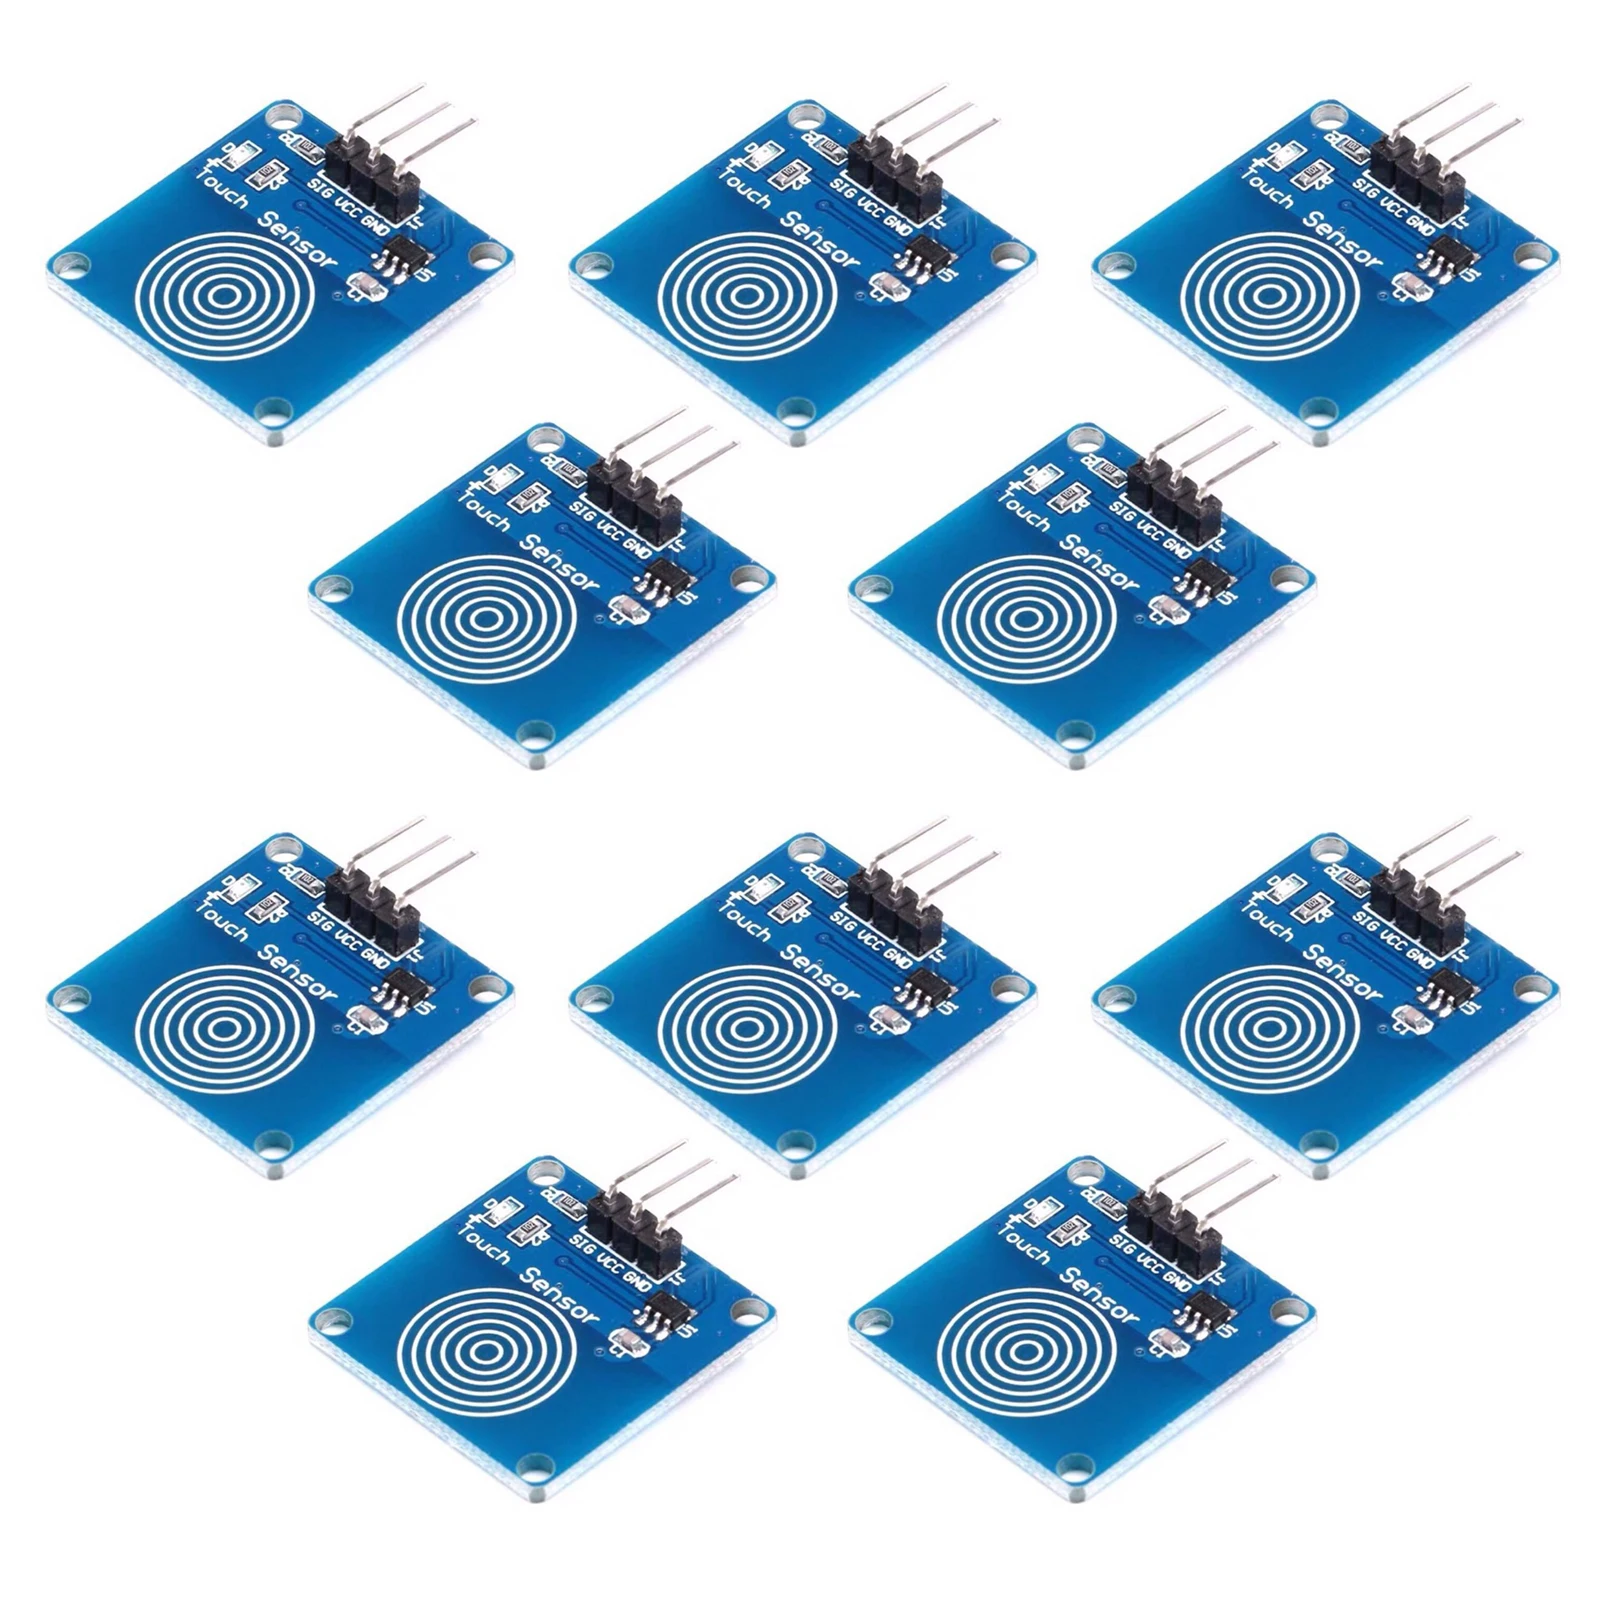 

10cs 1-канальный TTP223 Jog цифровой сенсорный синий TTP223B сенсорный модуль емкостный сенсорный переключатель для Arduino Diy стартовый комплект